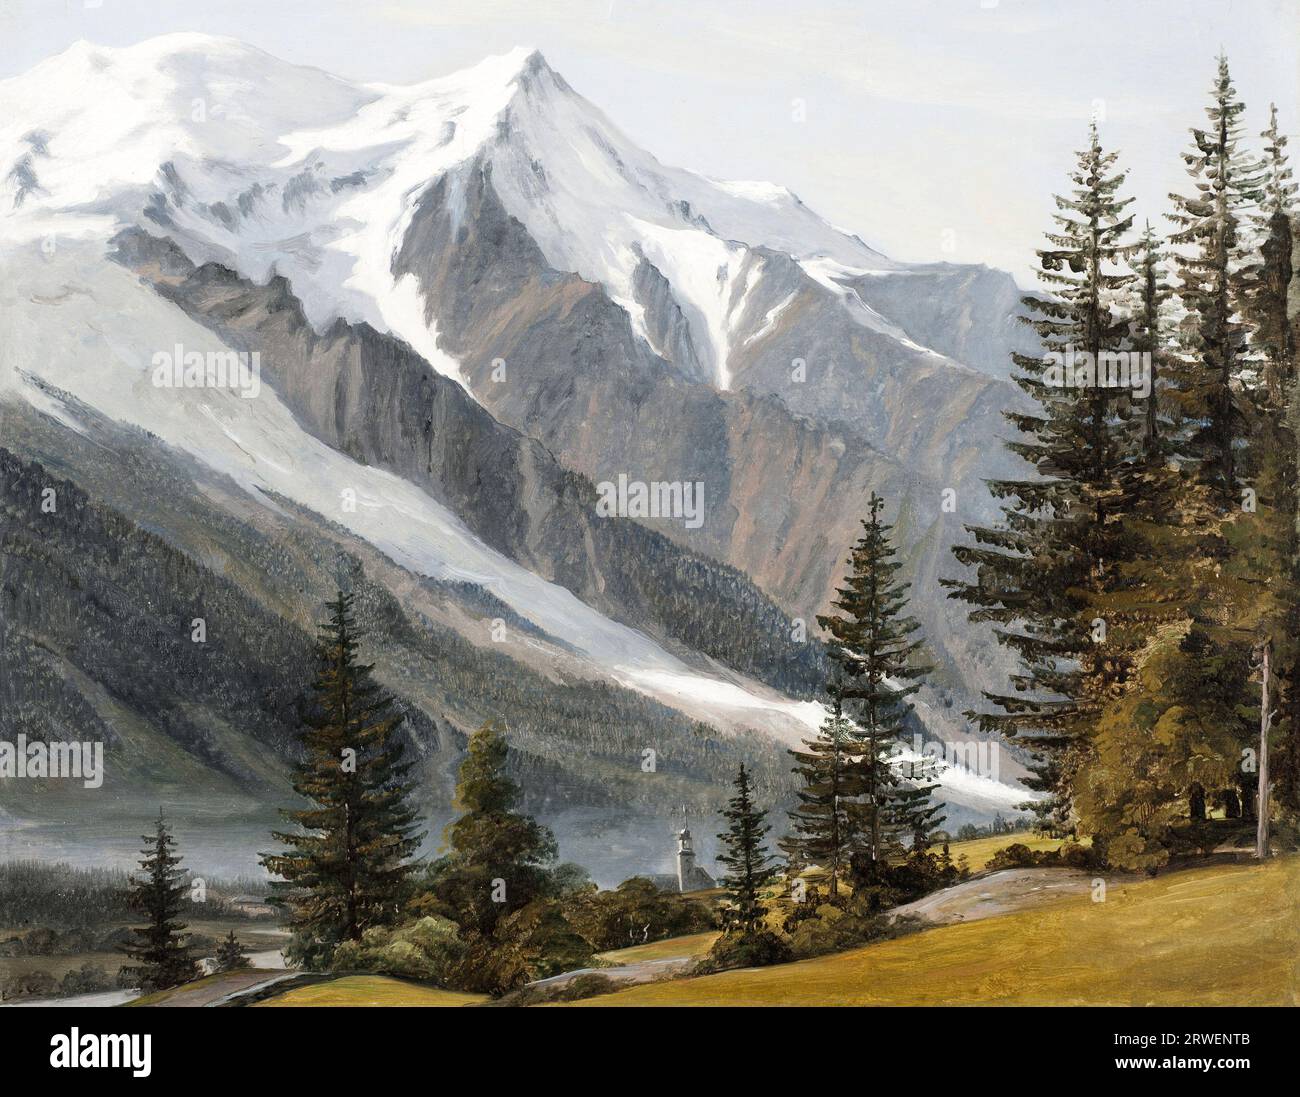 Veduta del Monte bianco da Chamonix, c. 1834, dipinto di Martinus Rorbye, storica riproduzione restaurata digitalmente da un originale del XIX secolo. Foto Stock